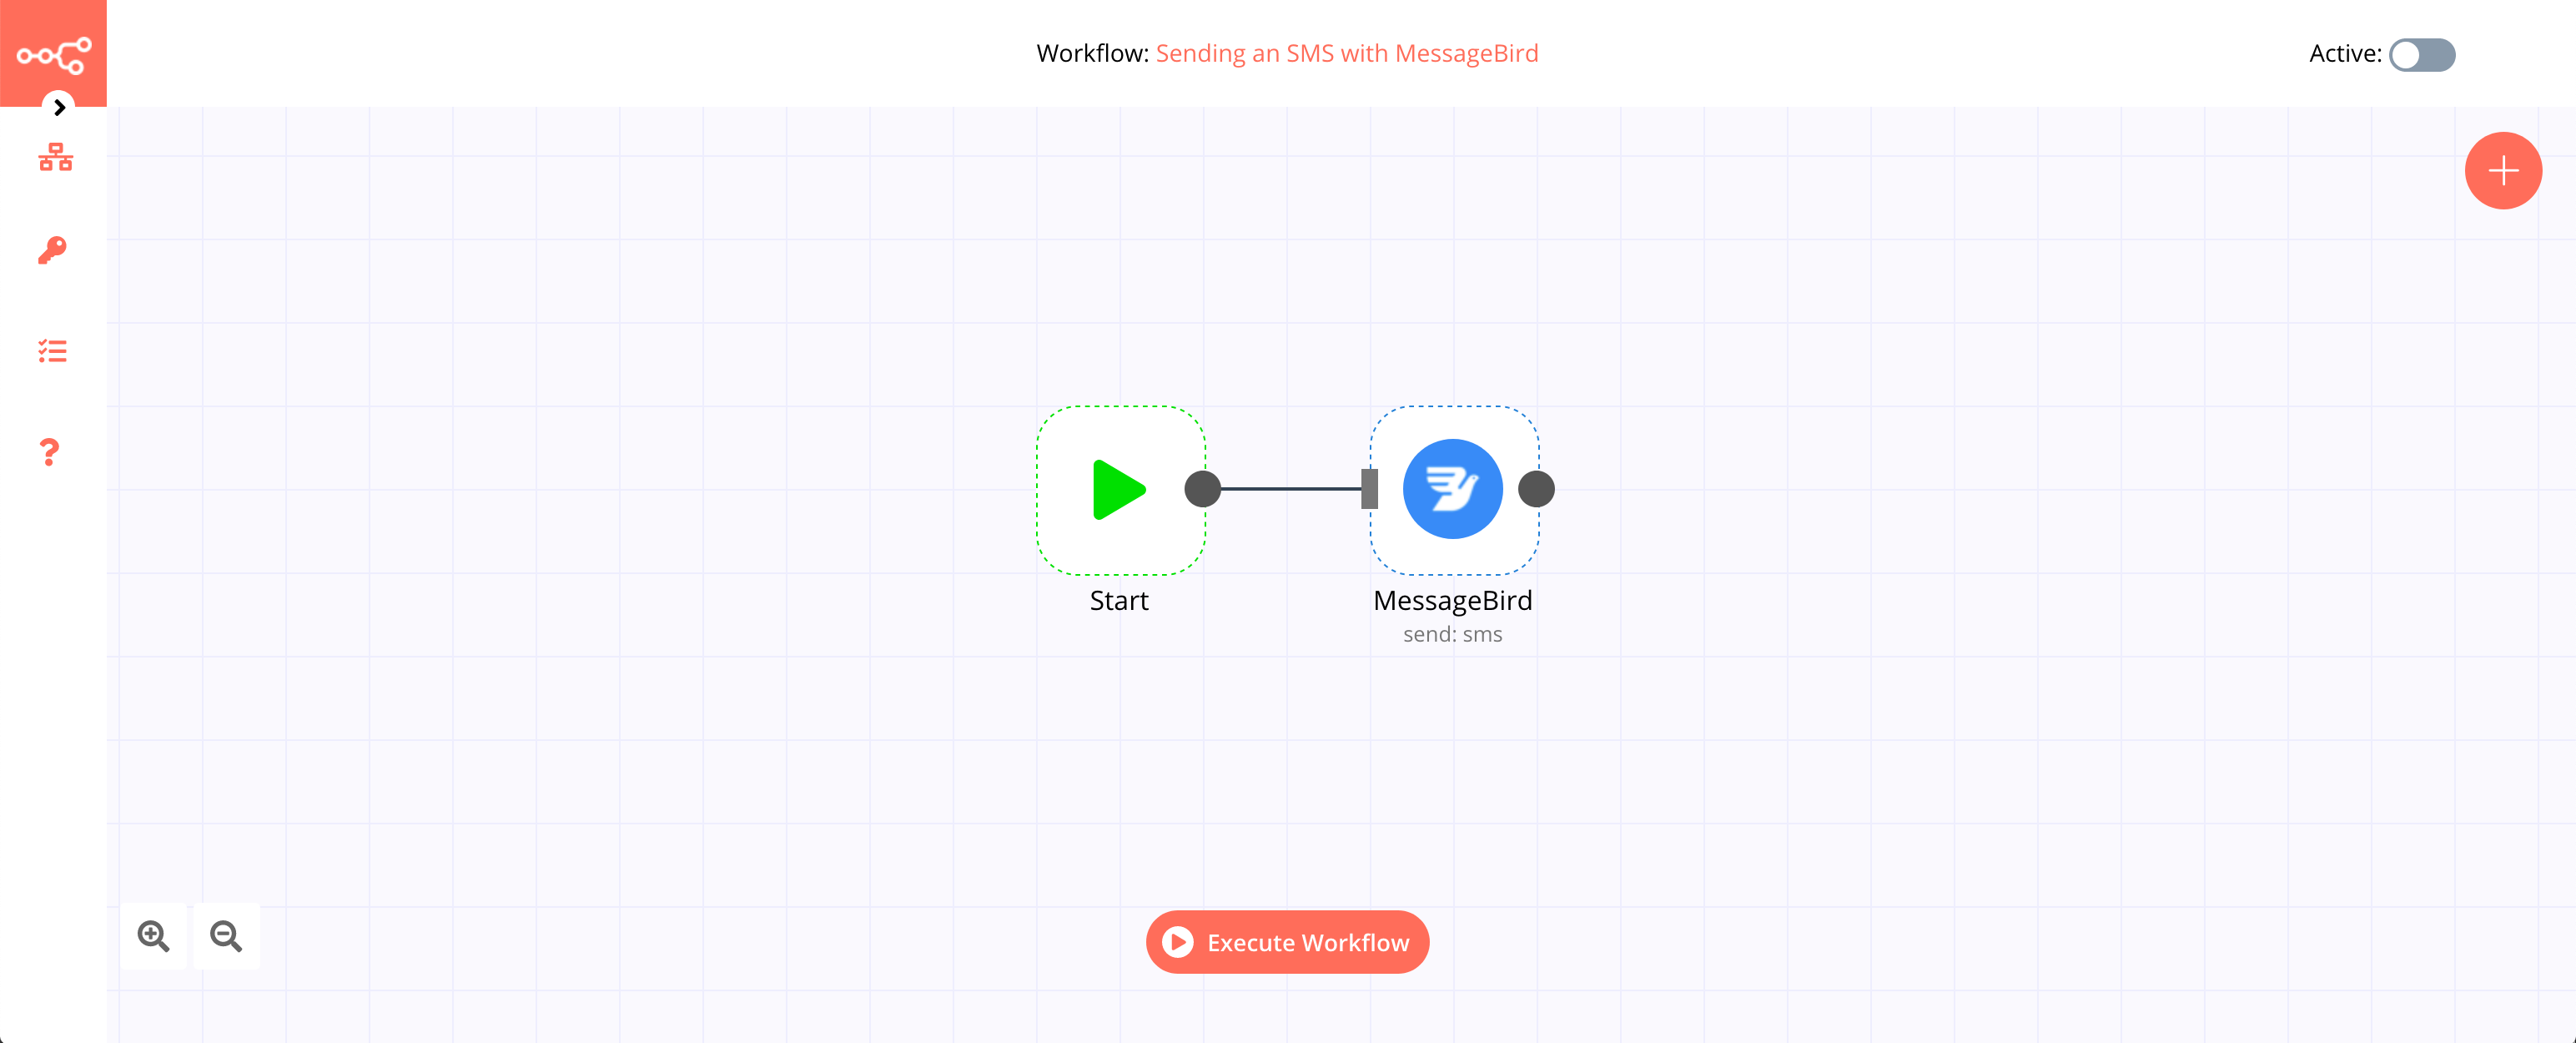 A workflow with the MessageBird node